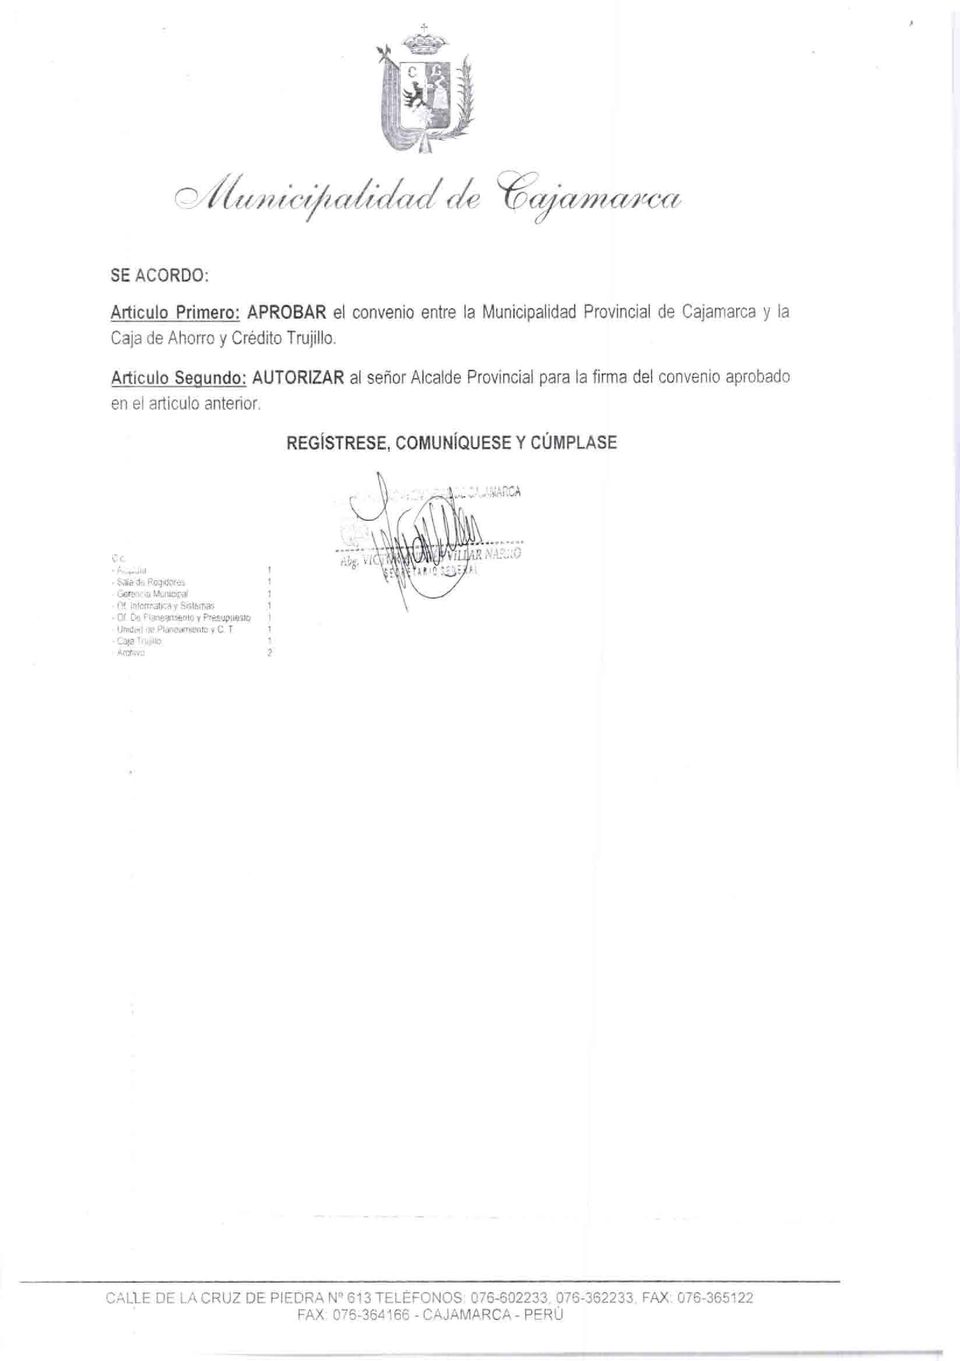 Artículo Segundo: AUTORIZAR ai señor Alcalde Provincial para la firma del convenio aprobado en el artículo anterior.